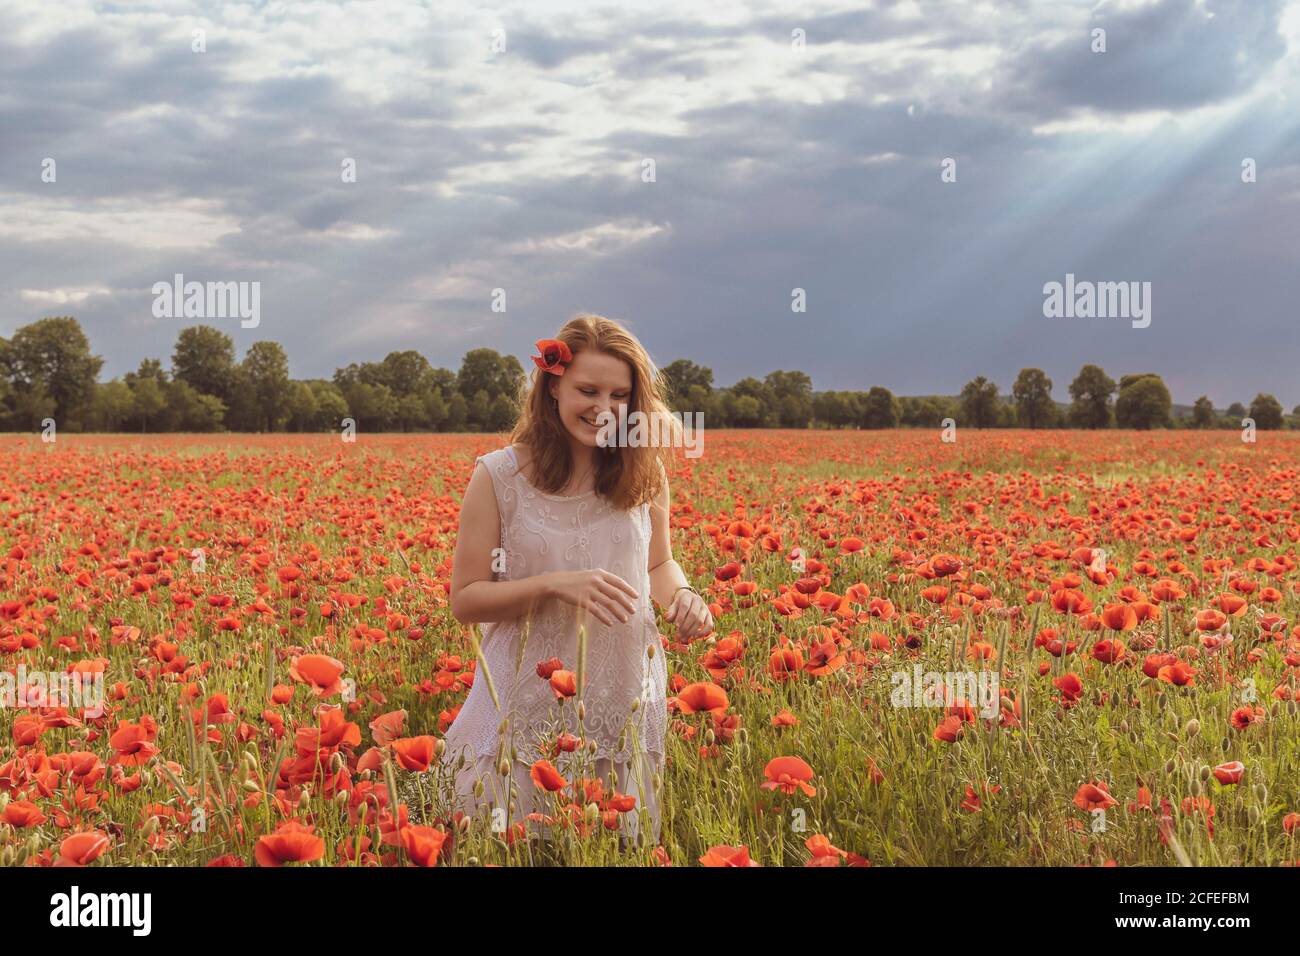 Junges Mädchen mit rötlichen Haaren steht im riesigen Rot poppy Feld und lächelt sorglos Stockfoto